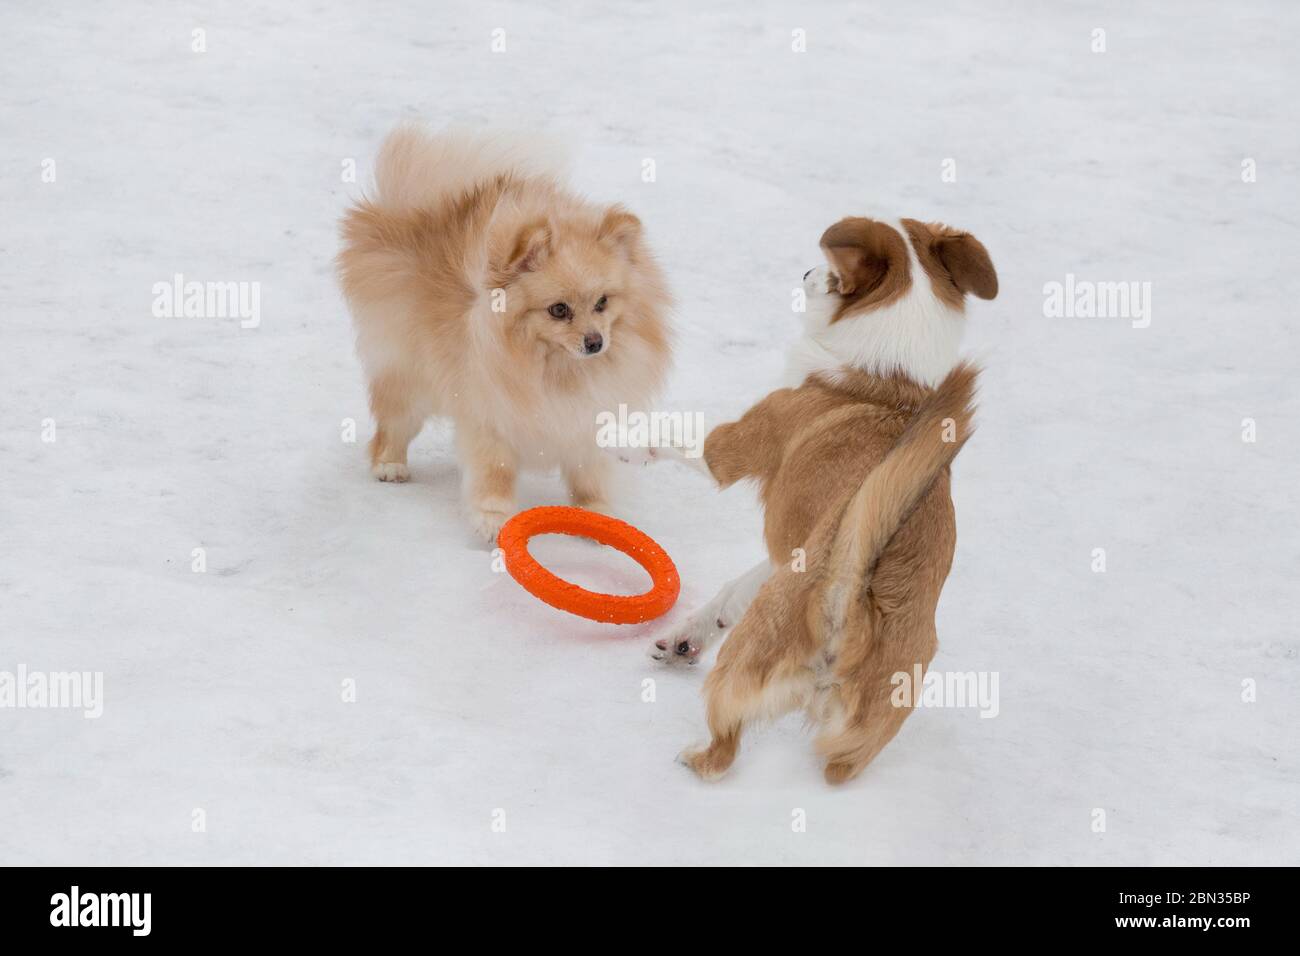 Cucciolo spitz e cucciolo di cane multibred rosso e sibile giocano con l'anello del cane nel parco invernale. Animali domestici. Foto Stock